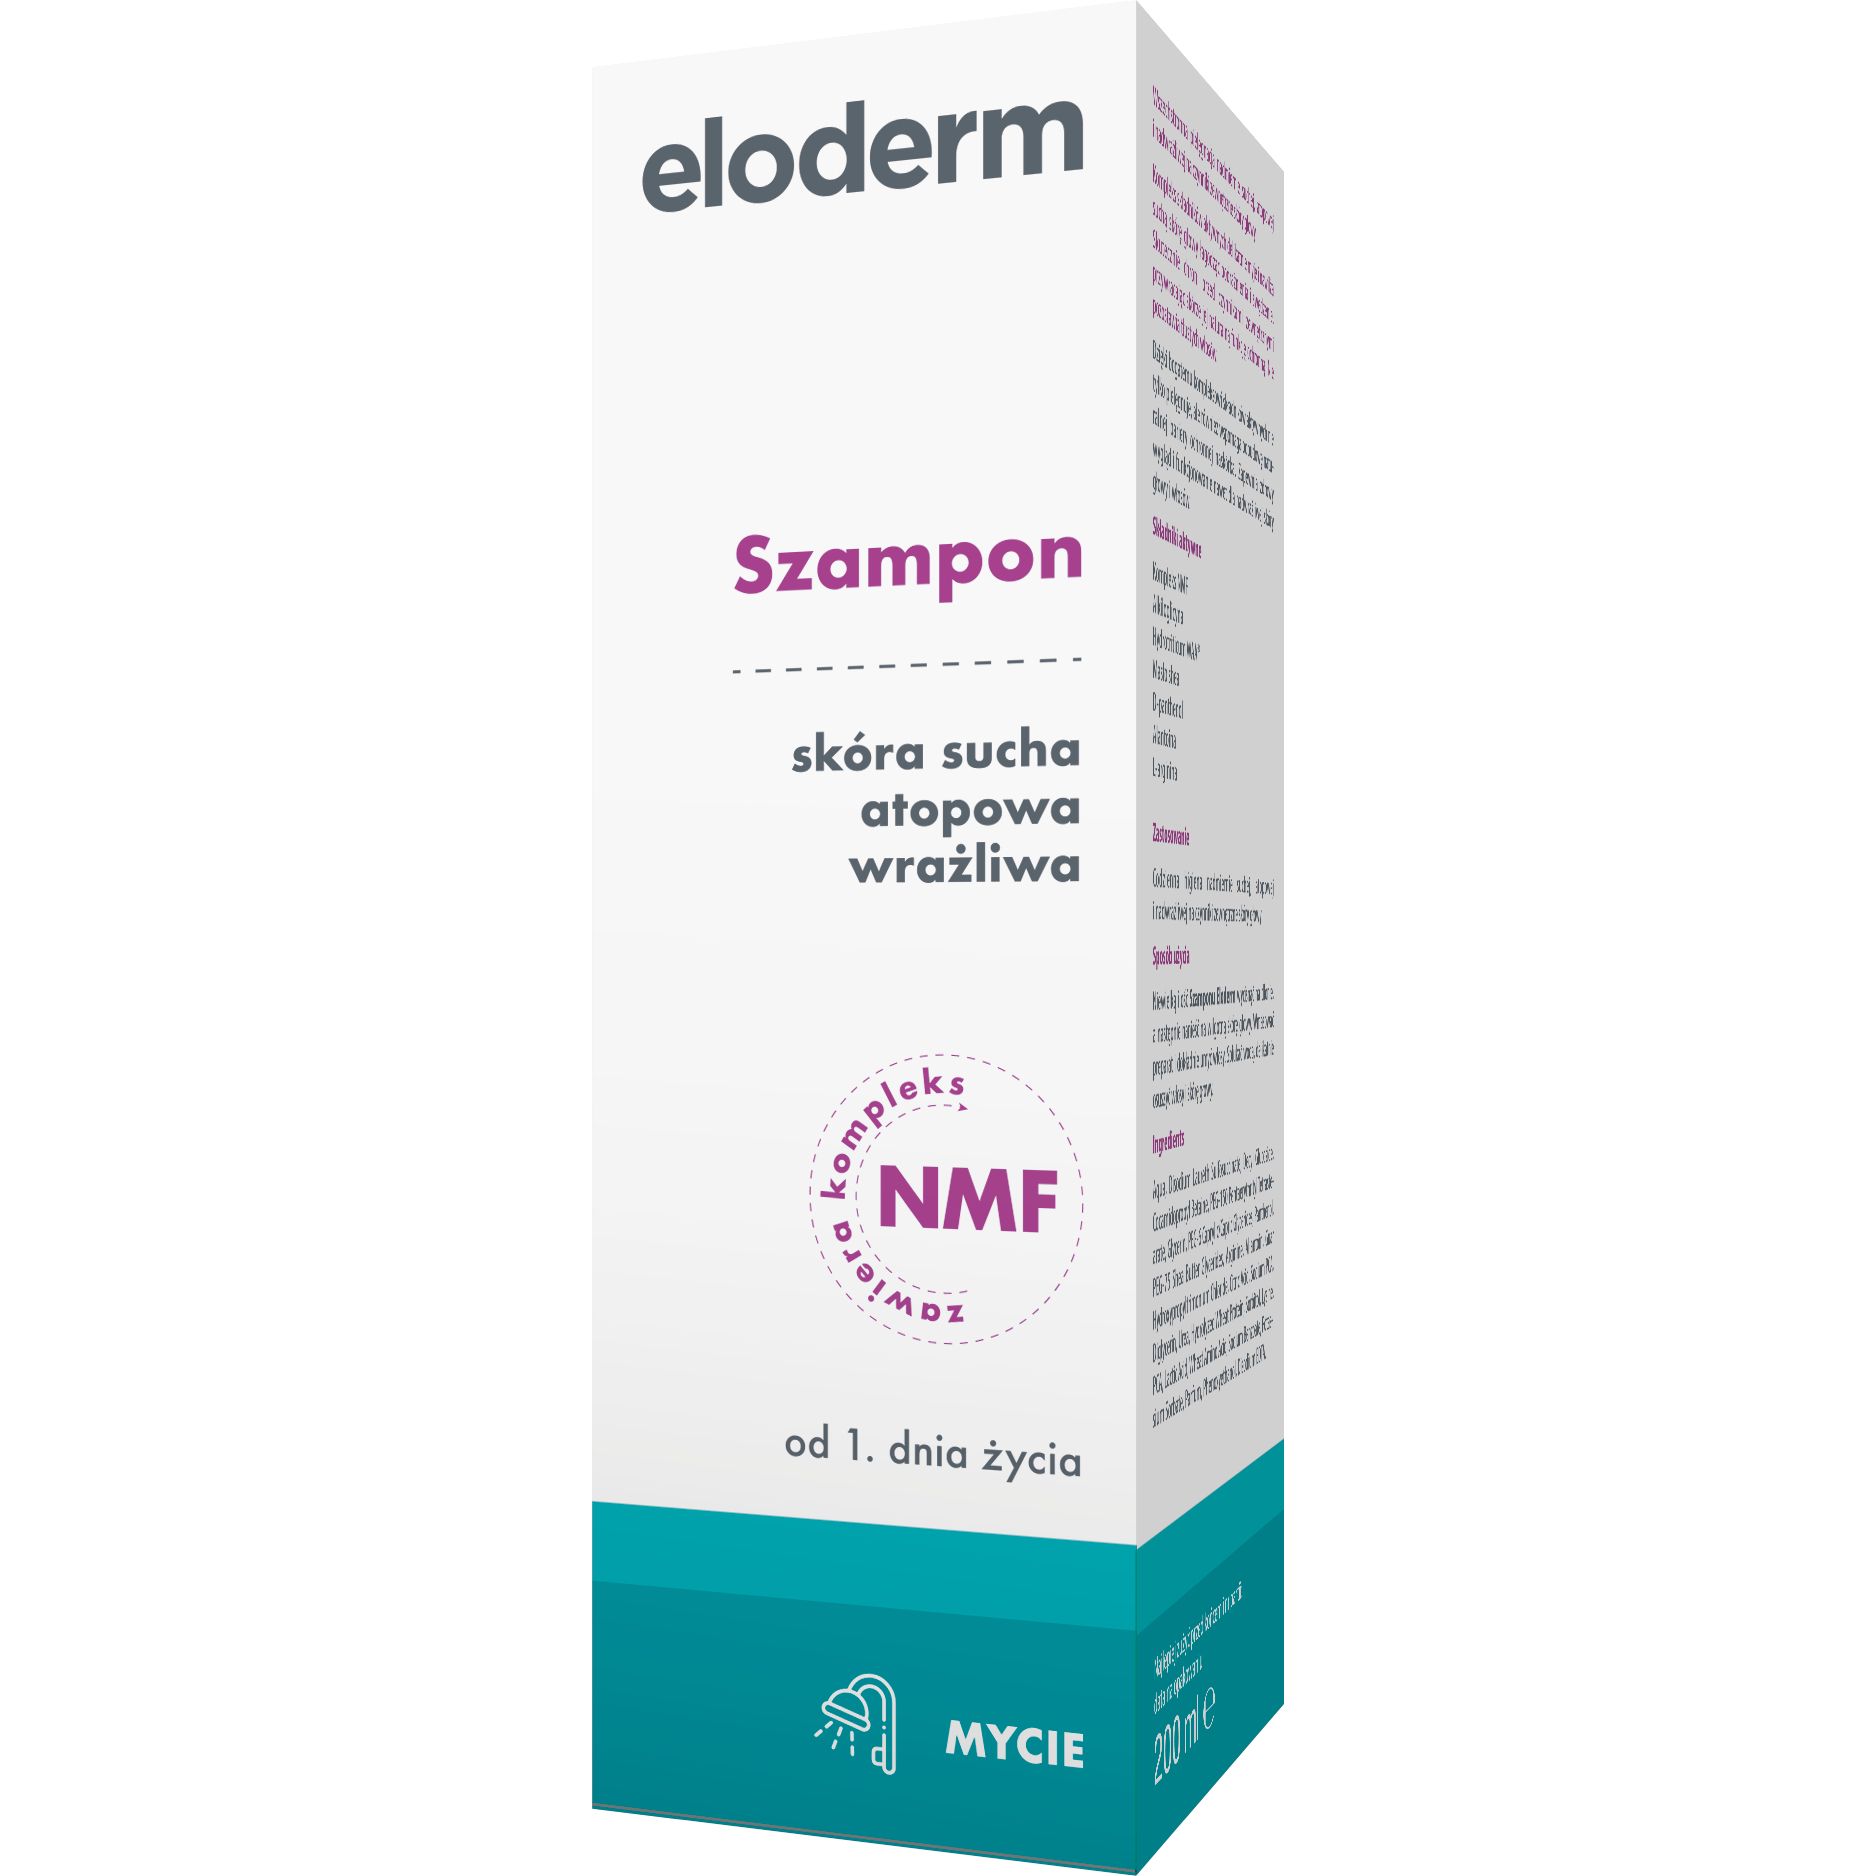 eooderm szampon cena